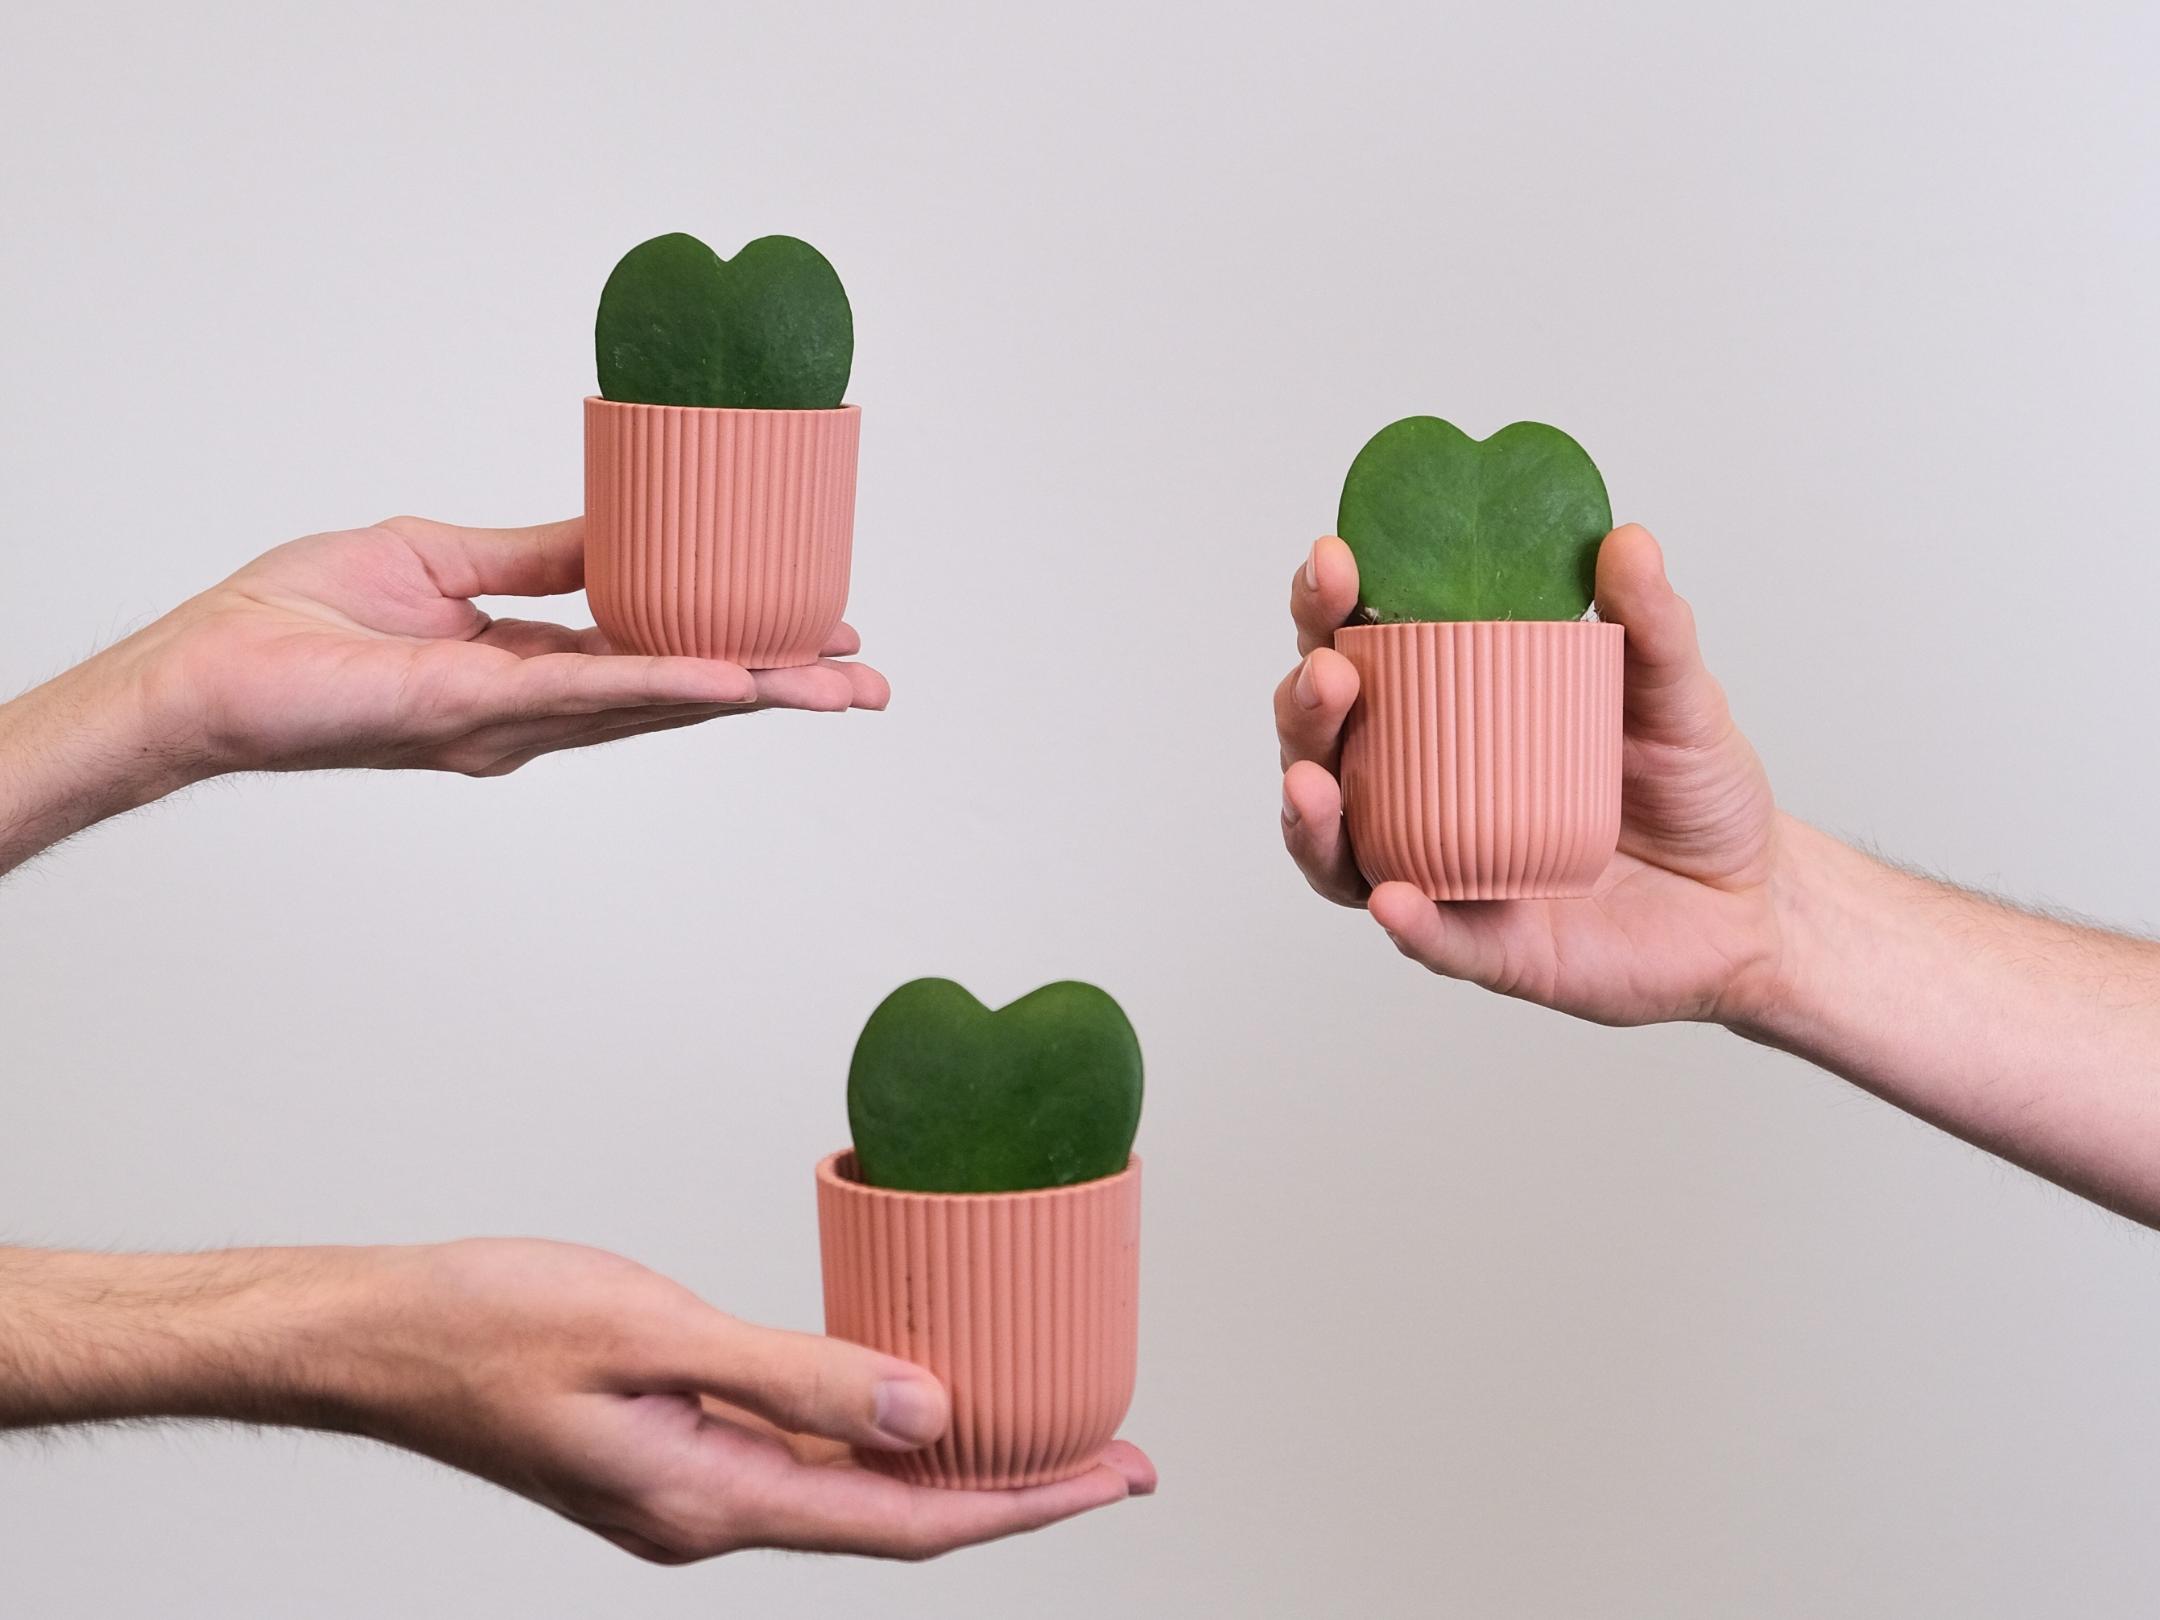 Drei Hände halten jeweils eine Tasse mit einem grünen Herz in das Bild